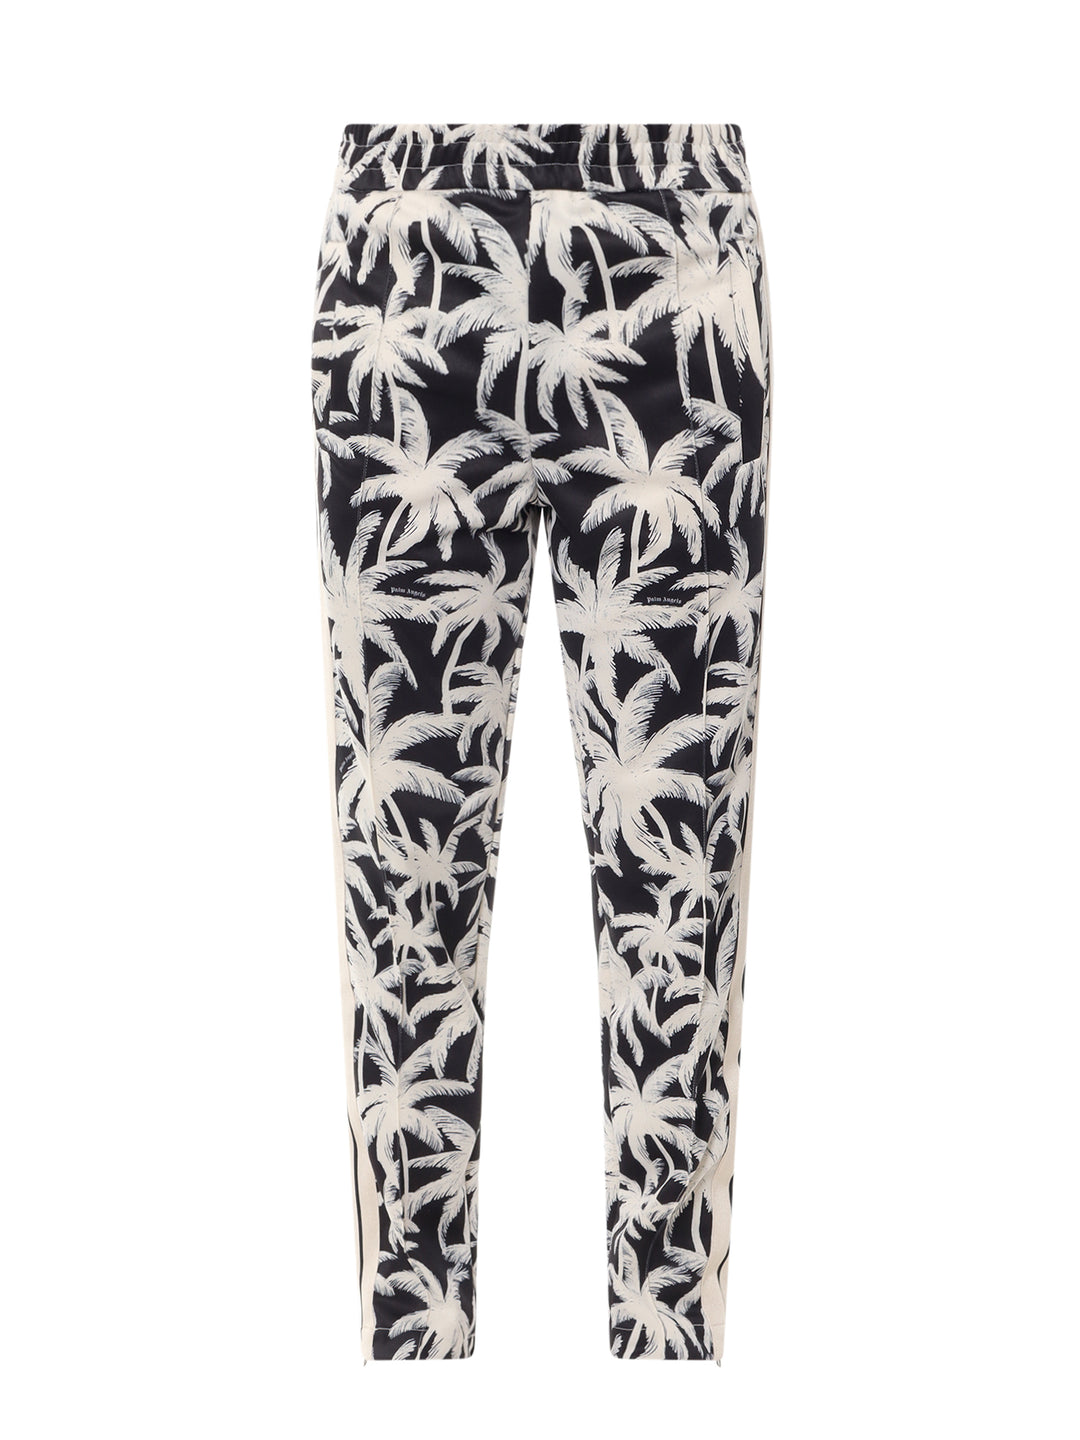 Pantalone in nylon con stampa Palms Allover